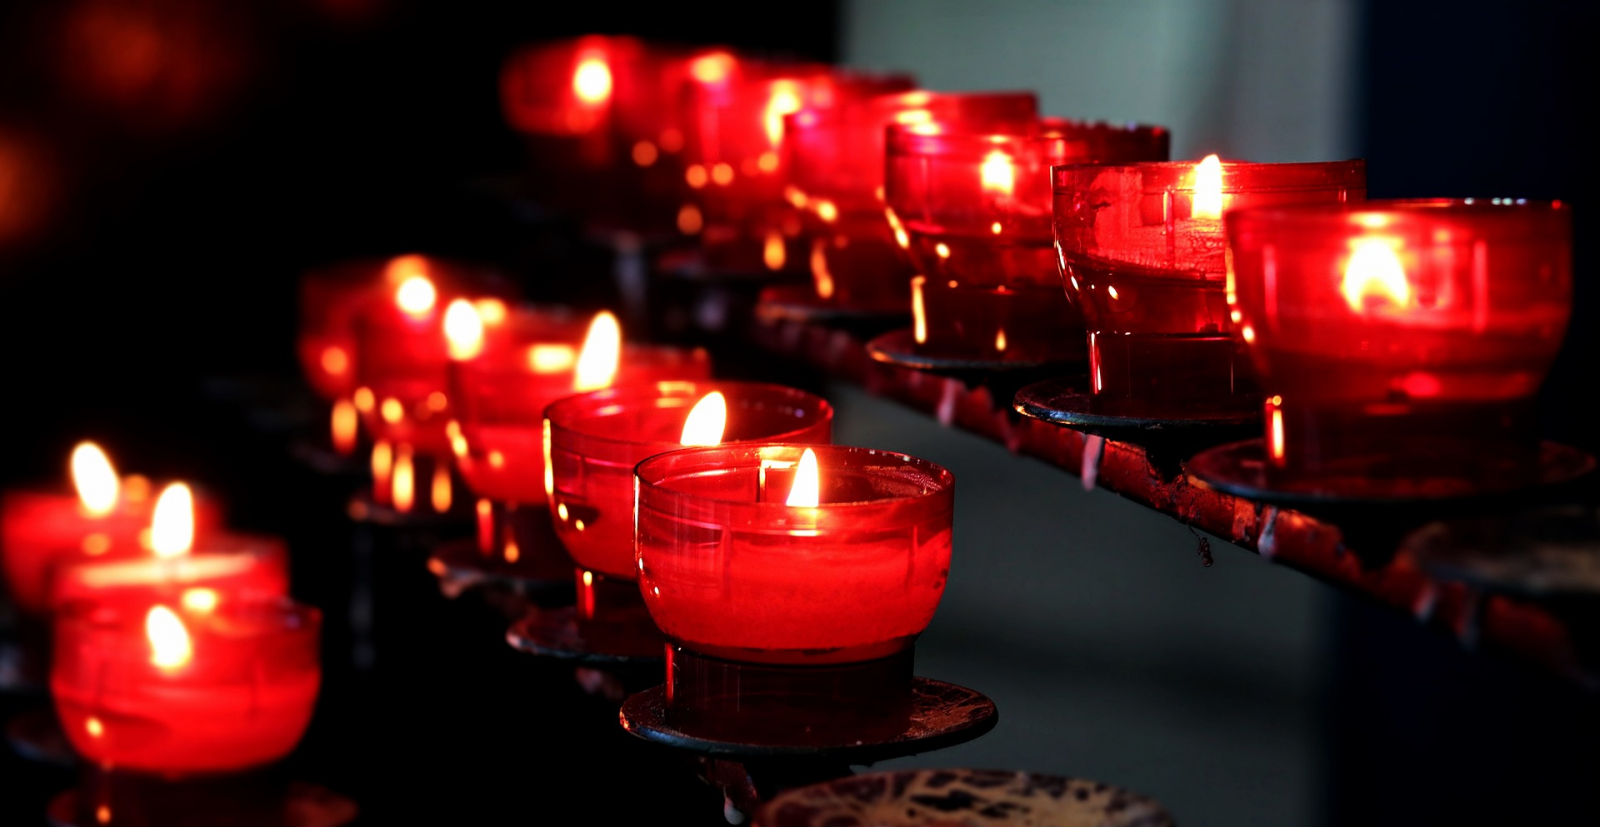 Lễ cầu siêu - một nghi thức quan trọng trong tín ngưỡng người Việt. Ảnh: Internet